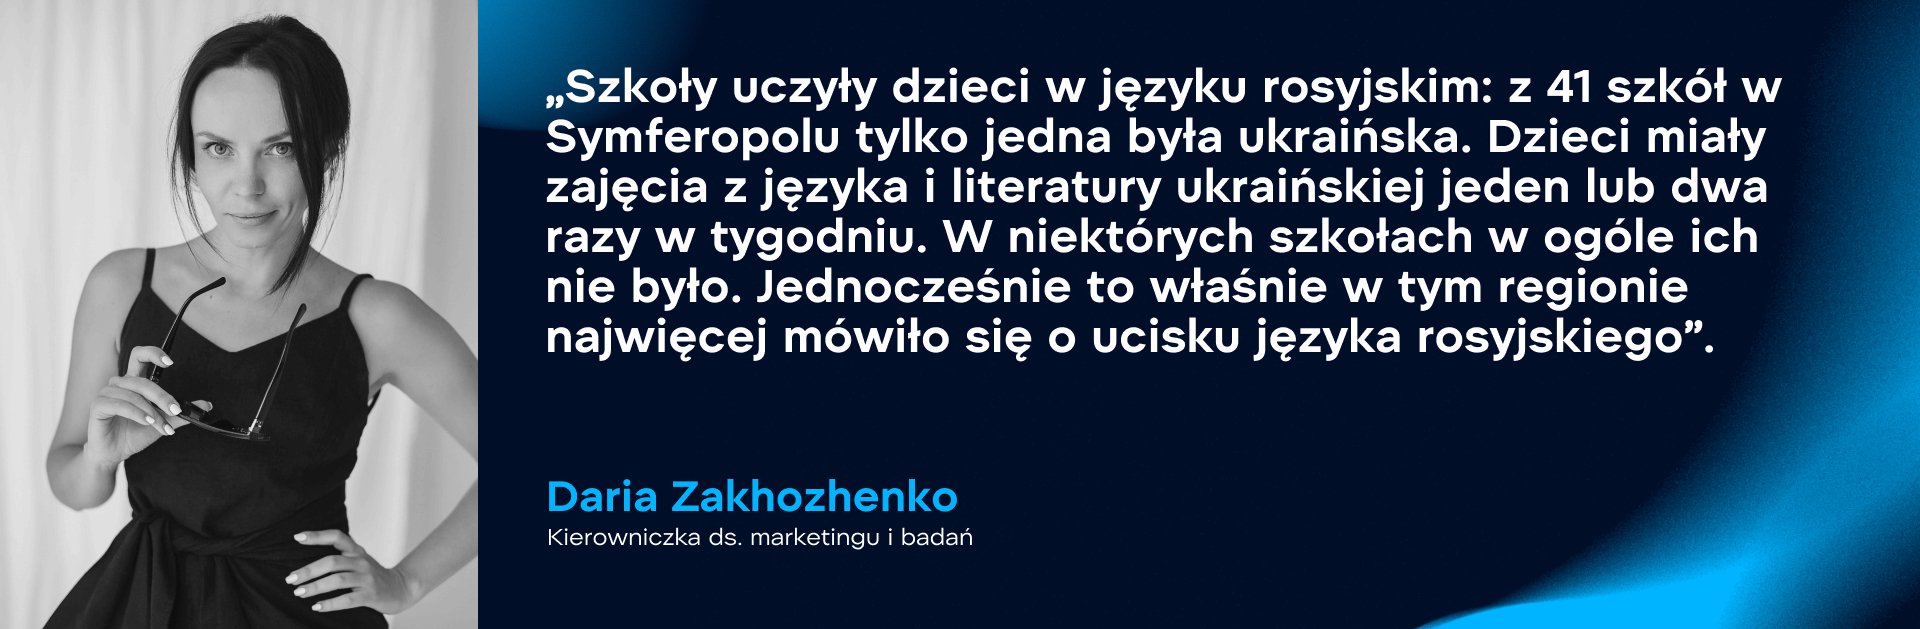 Daria Zakhozhenko, kierowniczka ds. marketingu i badań. Zdjęcie: WePlay Holding